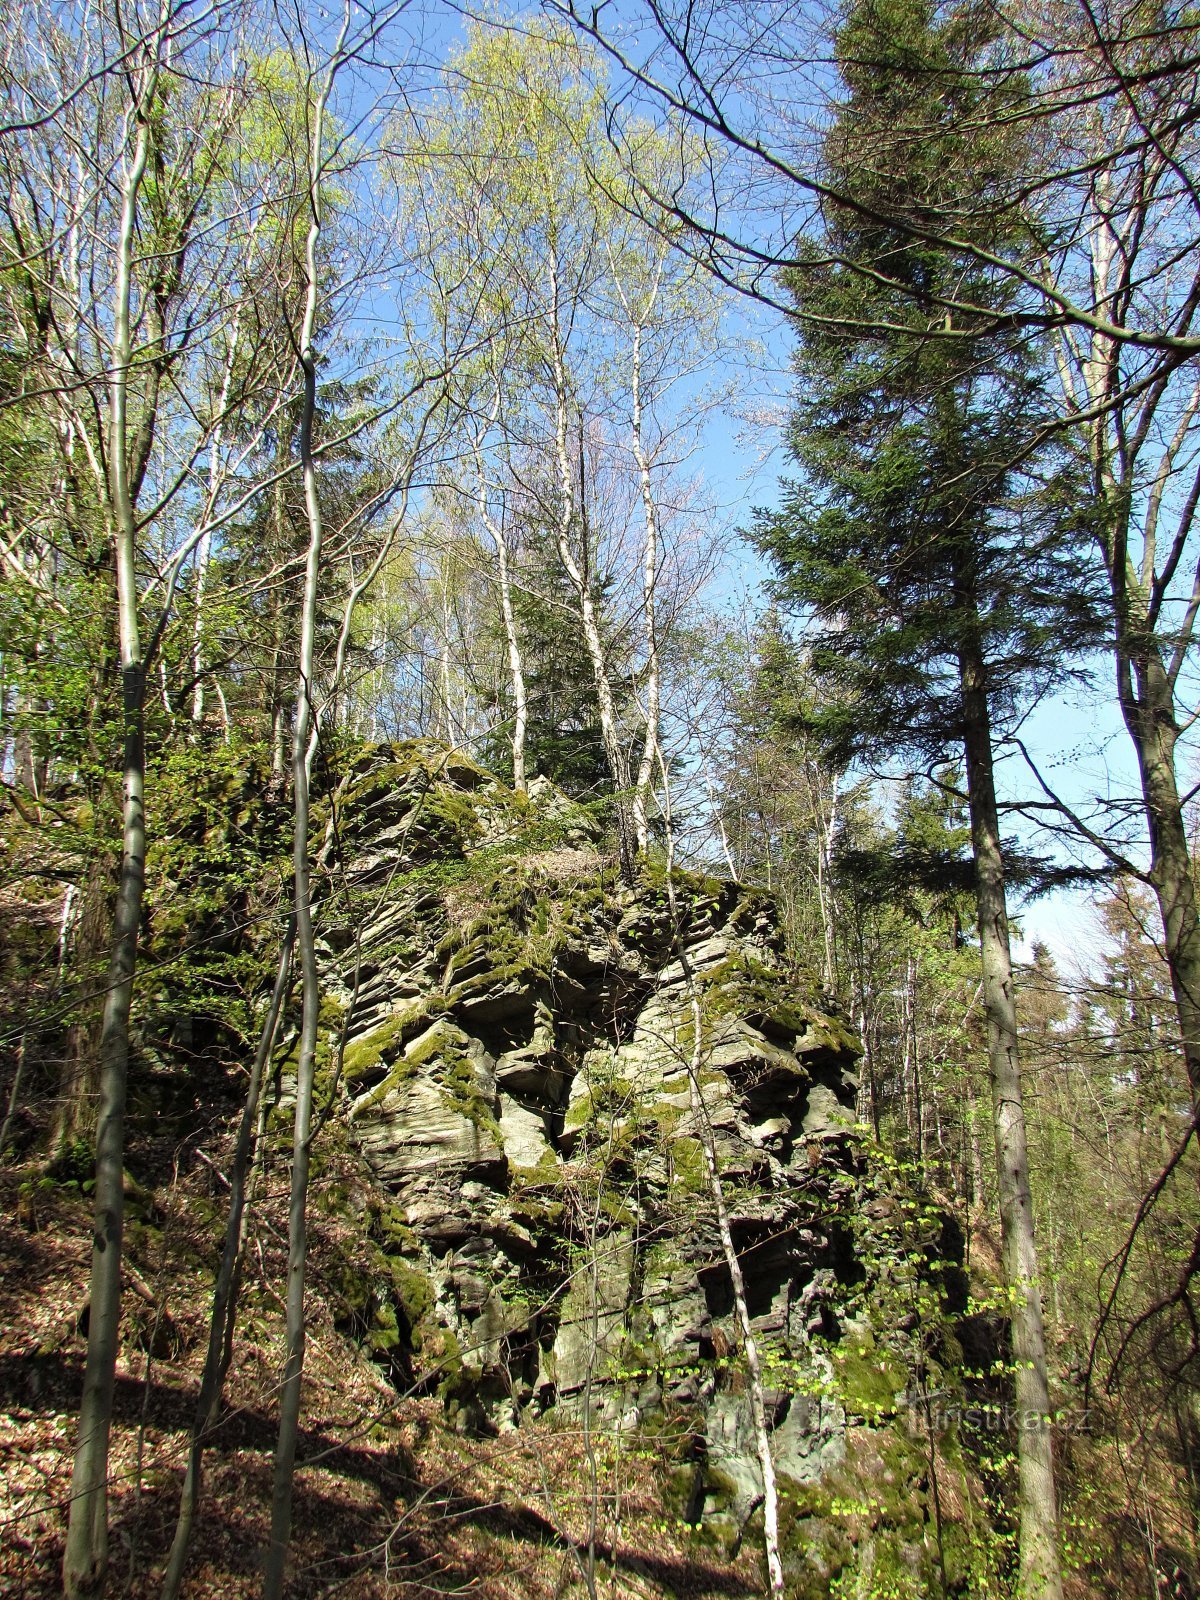 górny pas skalny schodzący ze szczytu wzgórza